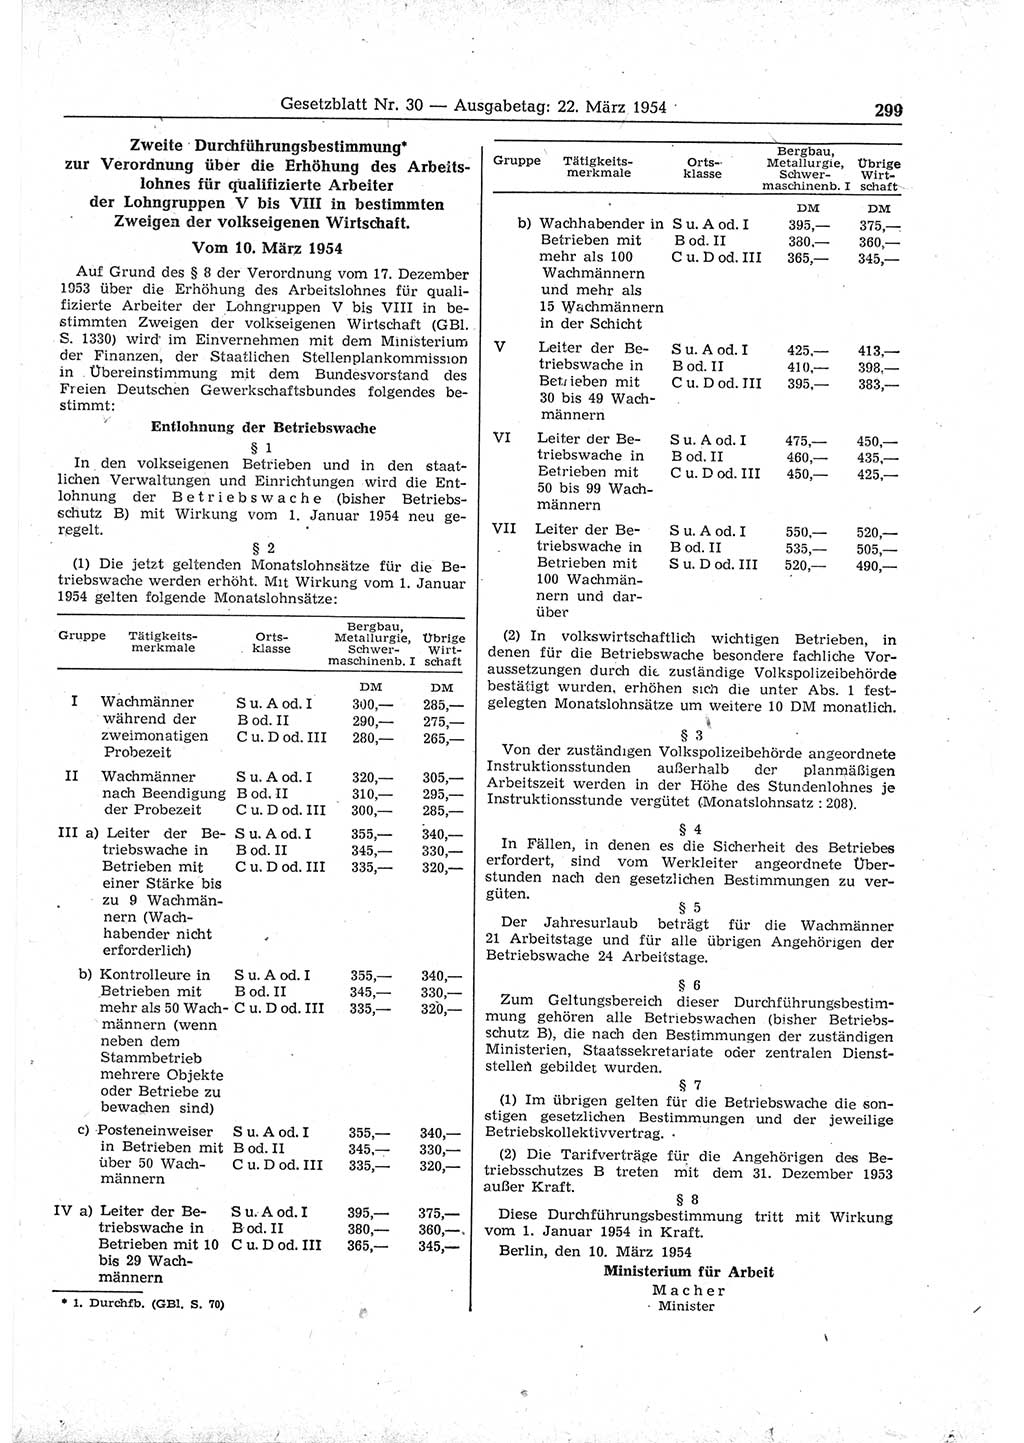 Gesetzblatt (GBl.) der Deutschen Demokratischen Republik (DDR) 1954, Seite 299 (GBl. DDR 1954, S. 299)